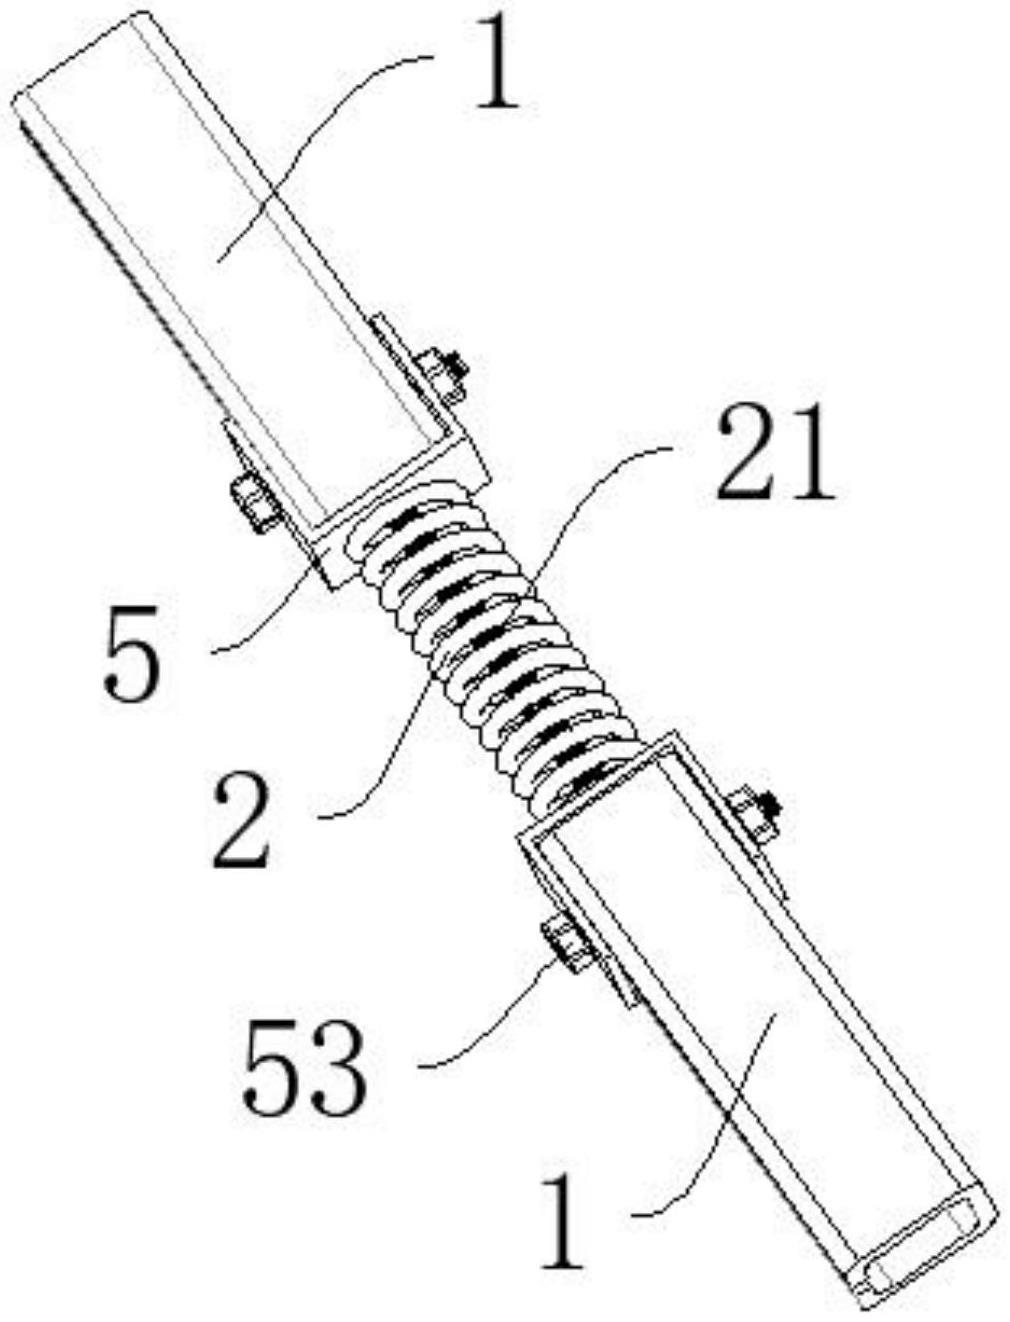 抗震支架的斜拉组件的制作方法